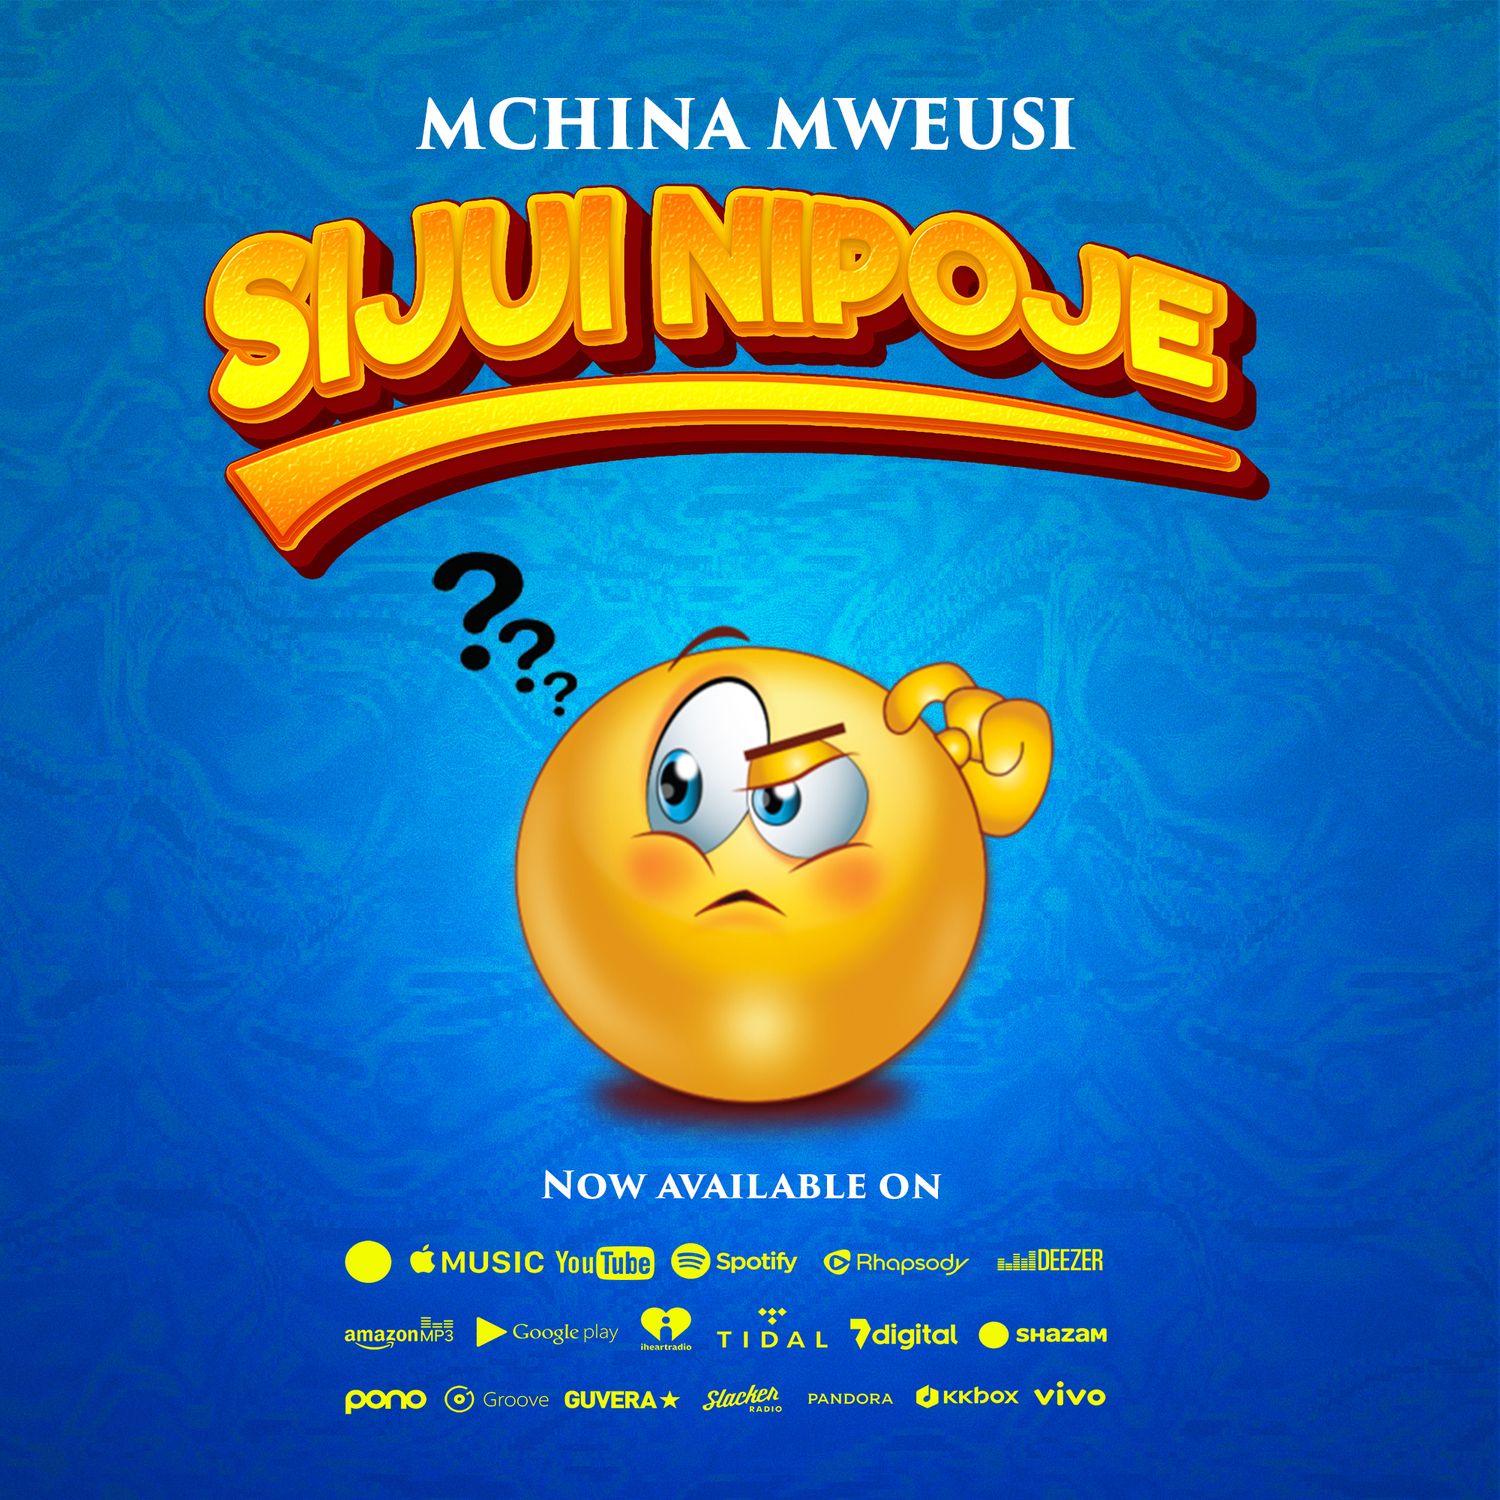 Mchina Mweusi - Sijui Nipoje